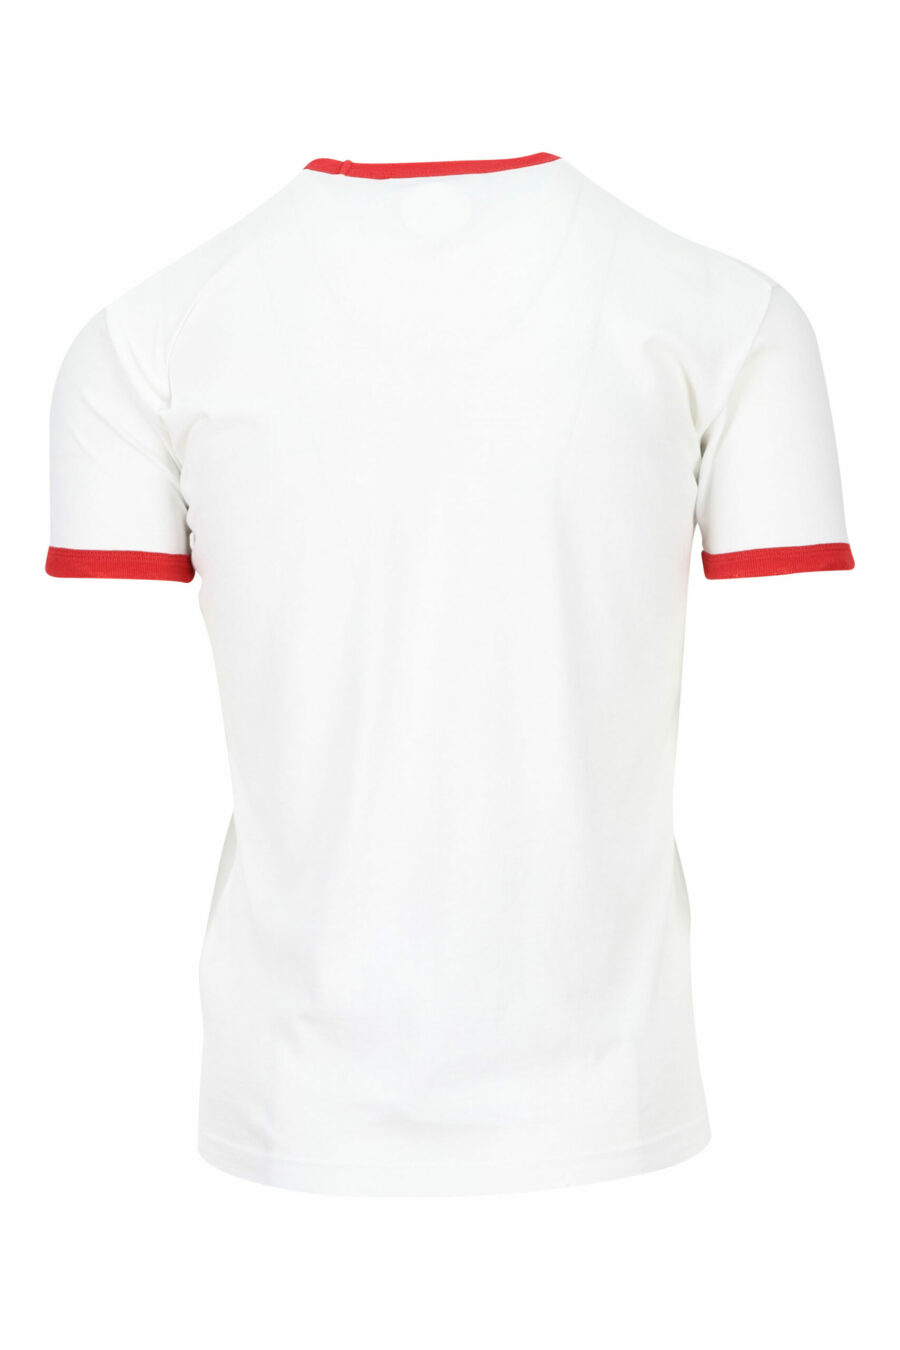 Camiseta blanca con detalles rojos y estampado hojas - 8054148150792 1 scaled